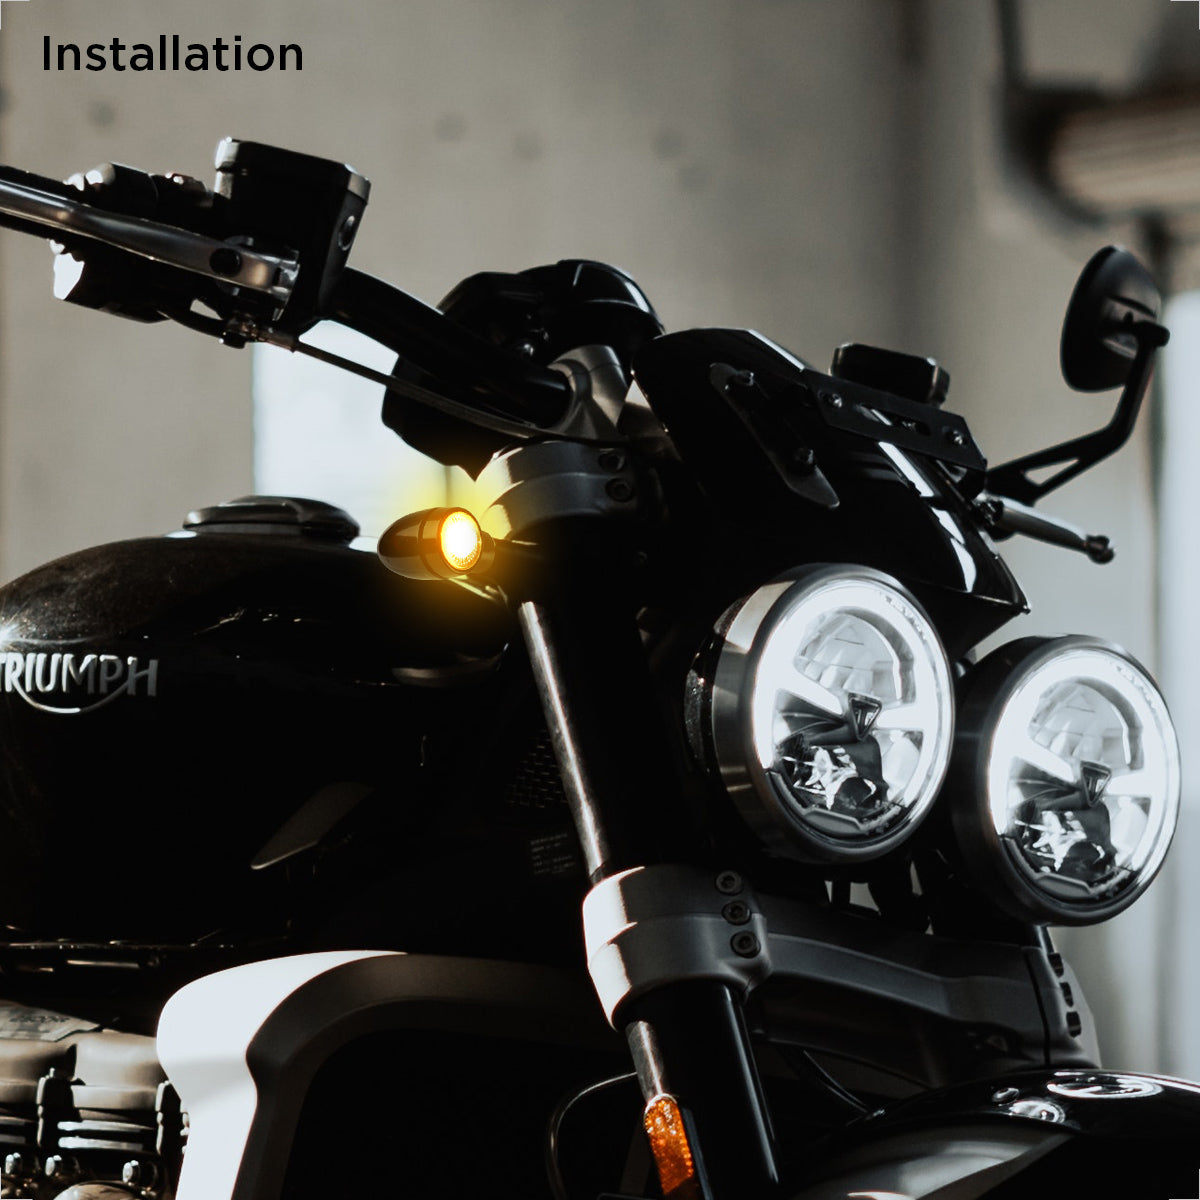 Universal Motorrad LED-Blinker Sword getönt M8 E-geprüft